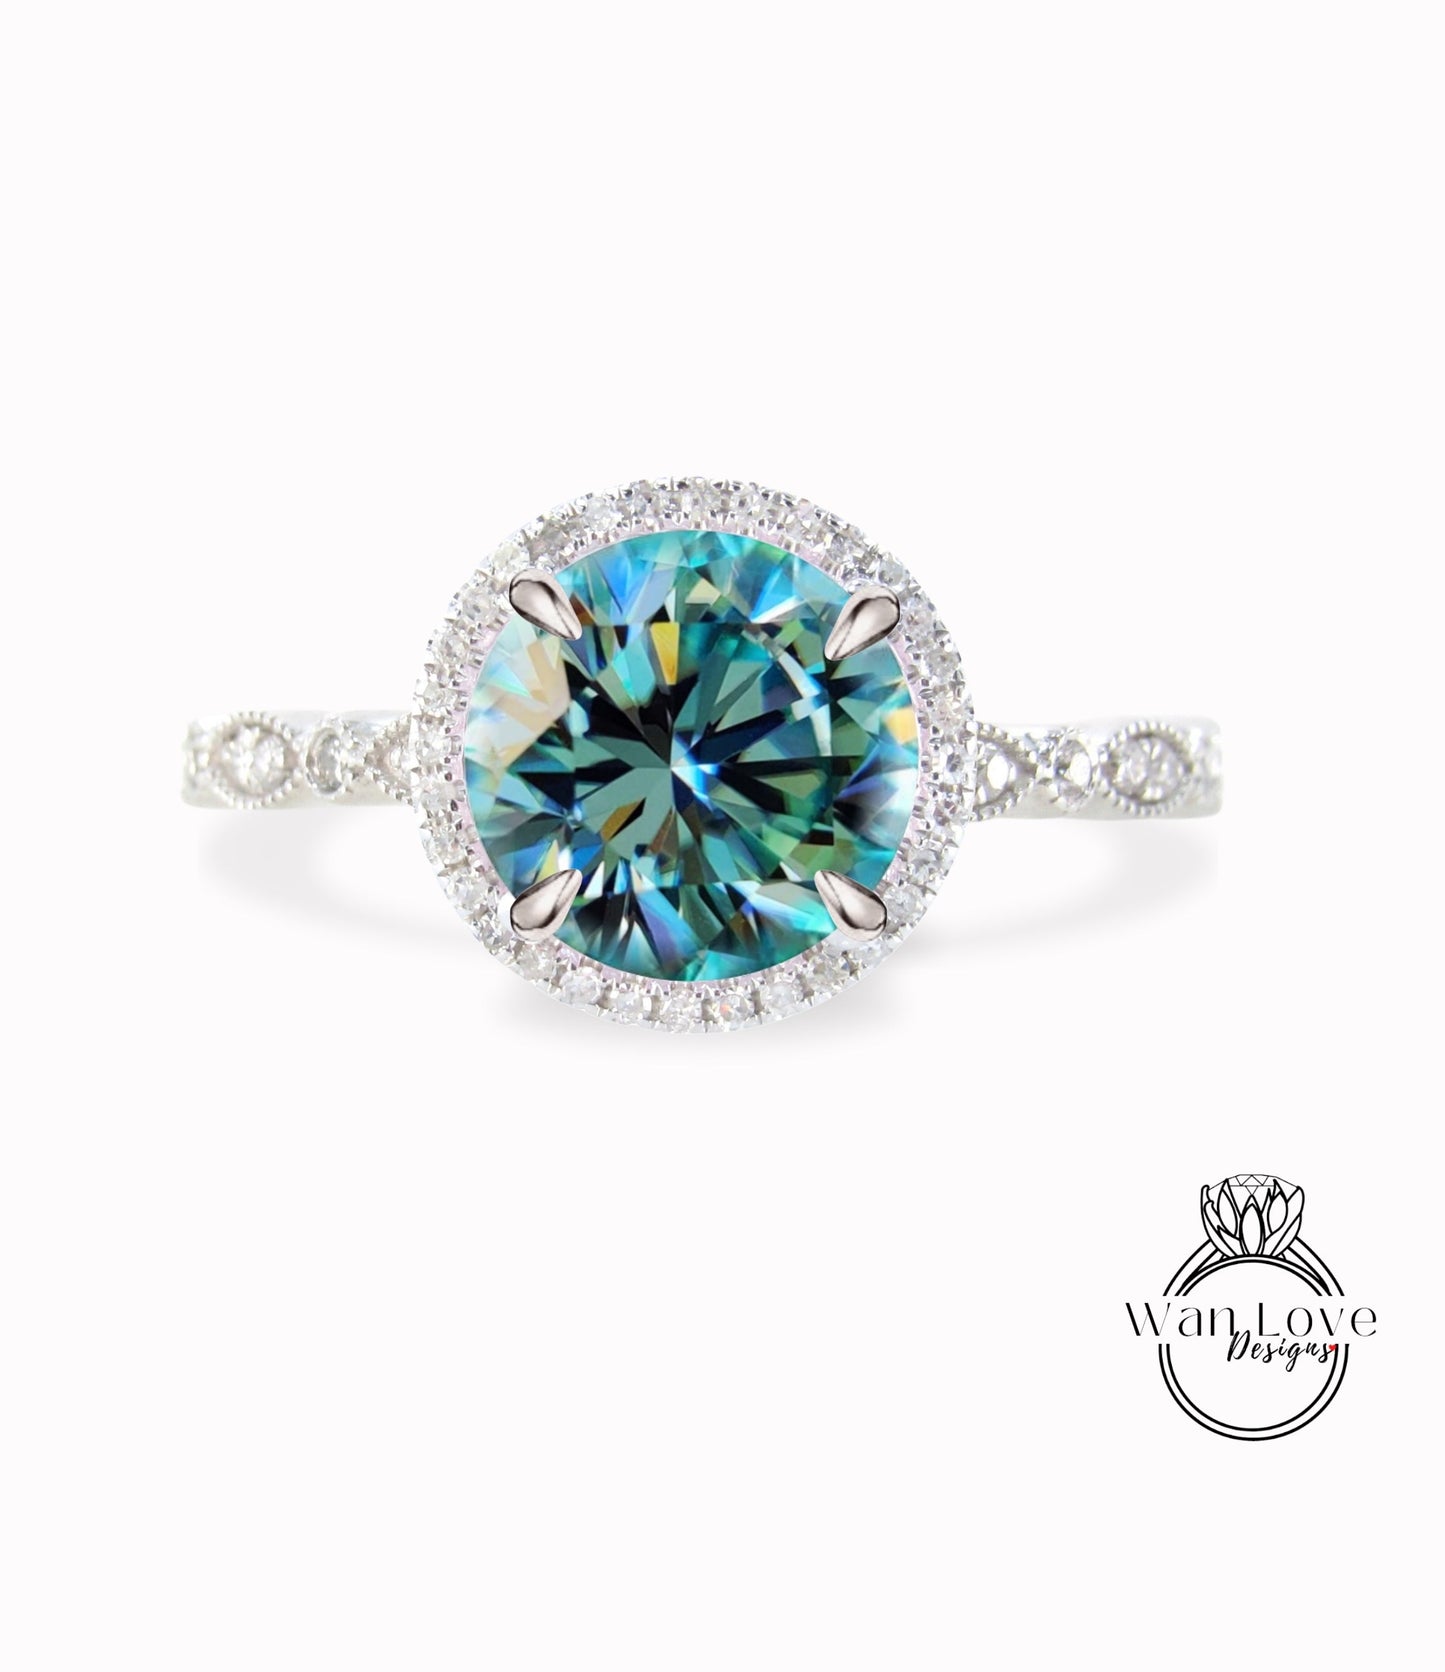 Round Halo Teal Blue Green Moissanite Engagement Ring, Diamond/Moissanite Halo Wedding Ring, Scalloped Leaf Diamond Milgrain Shank Band Custom Ring, 14k/18k Gold Wan Love Designs